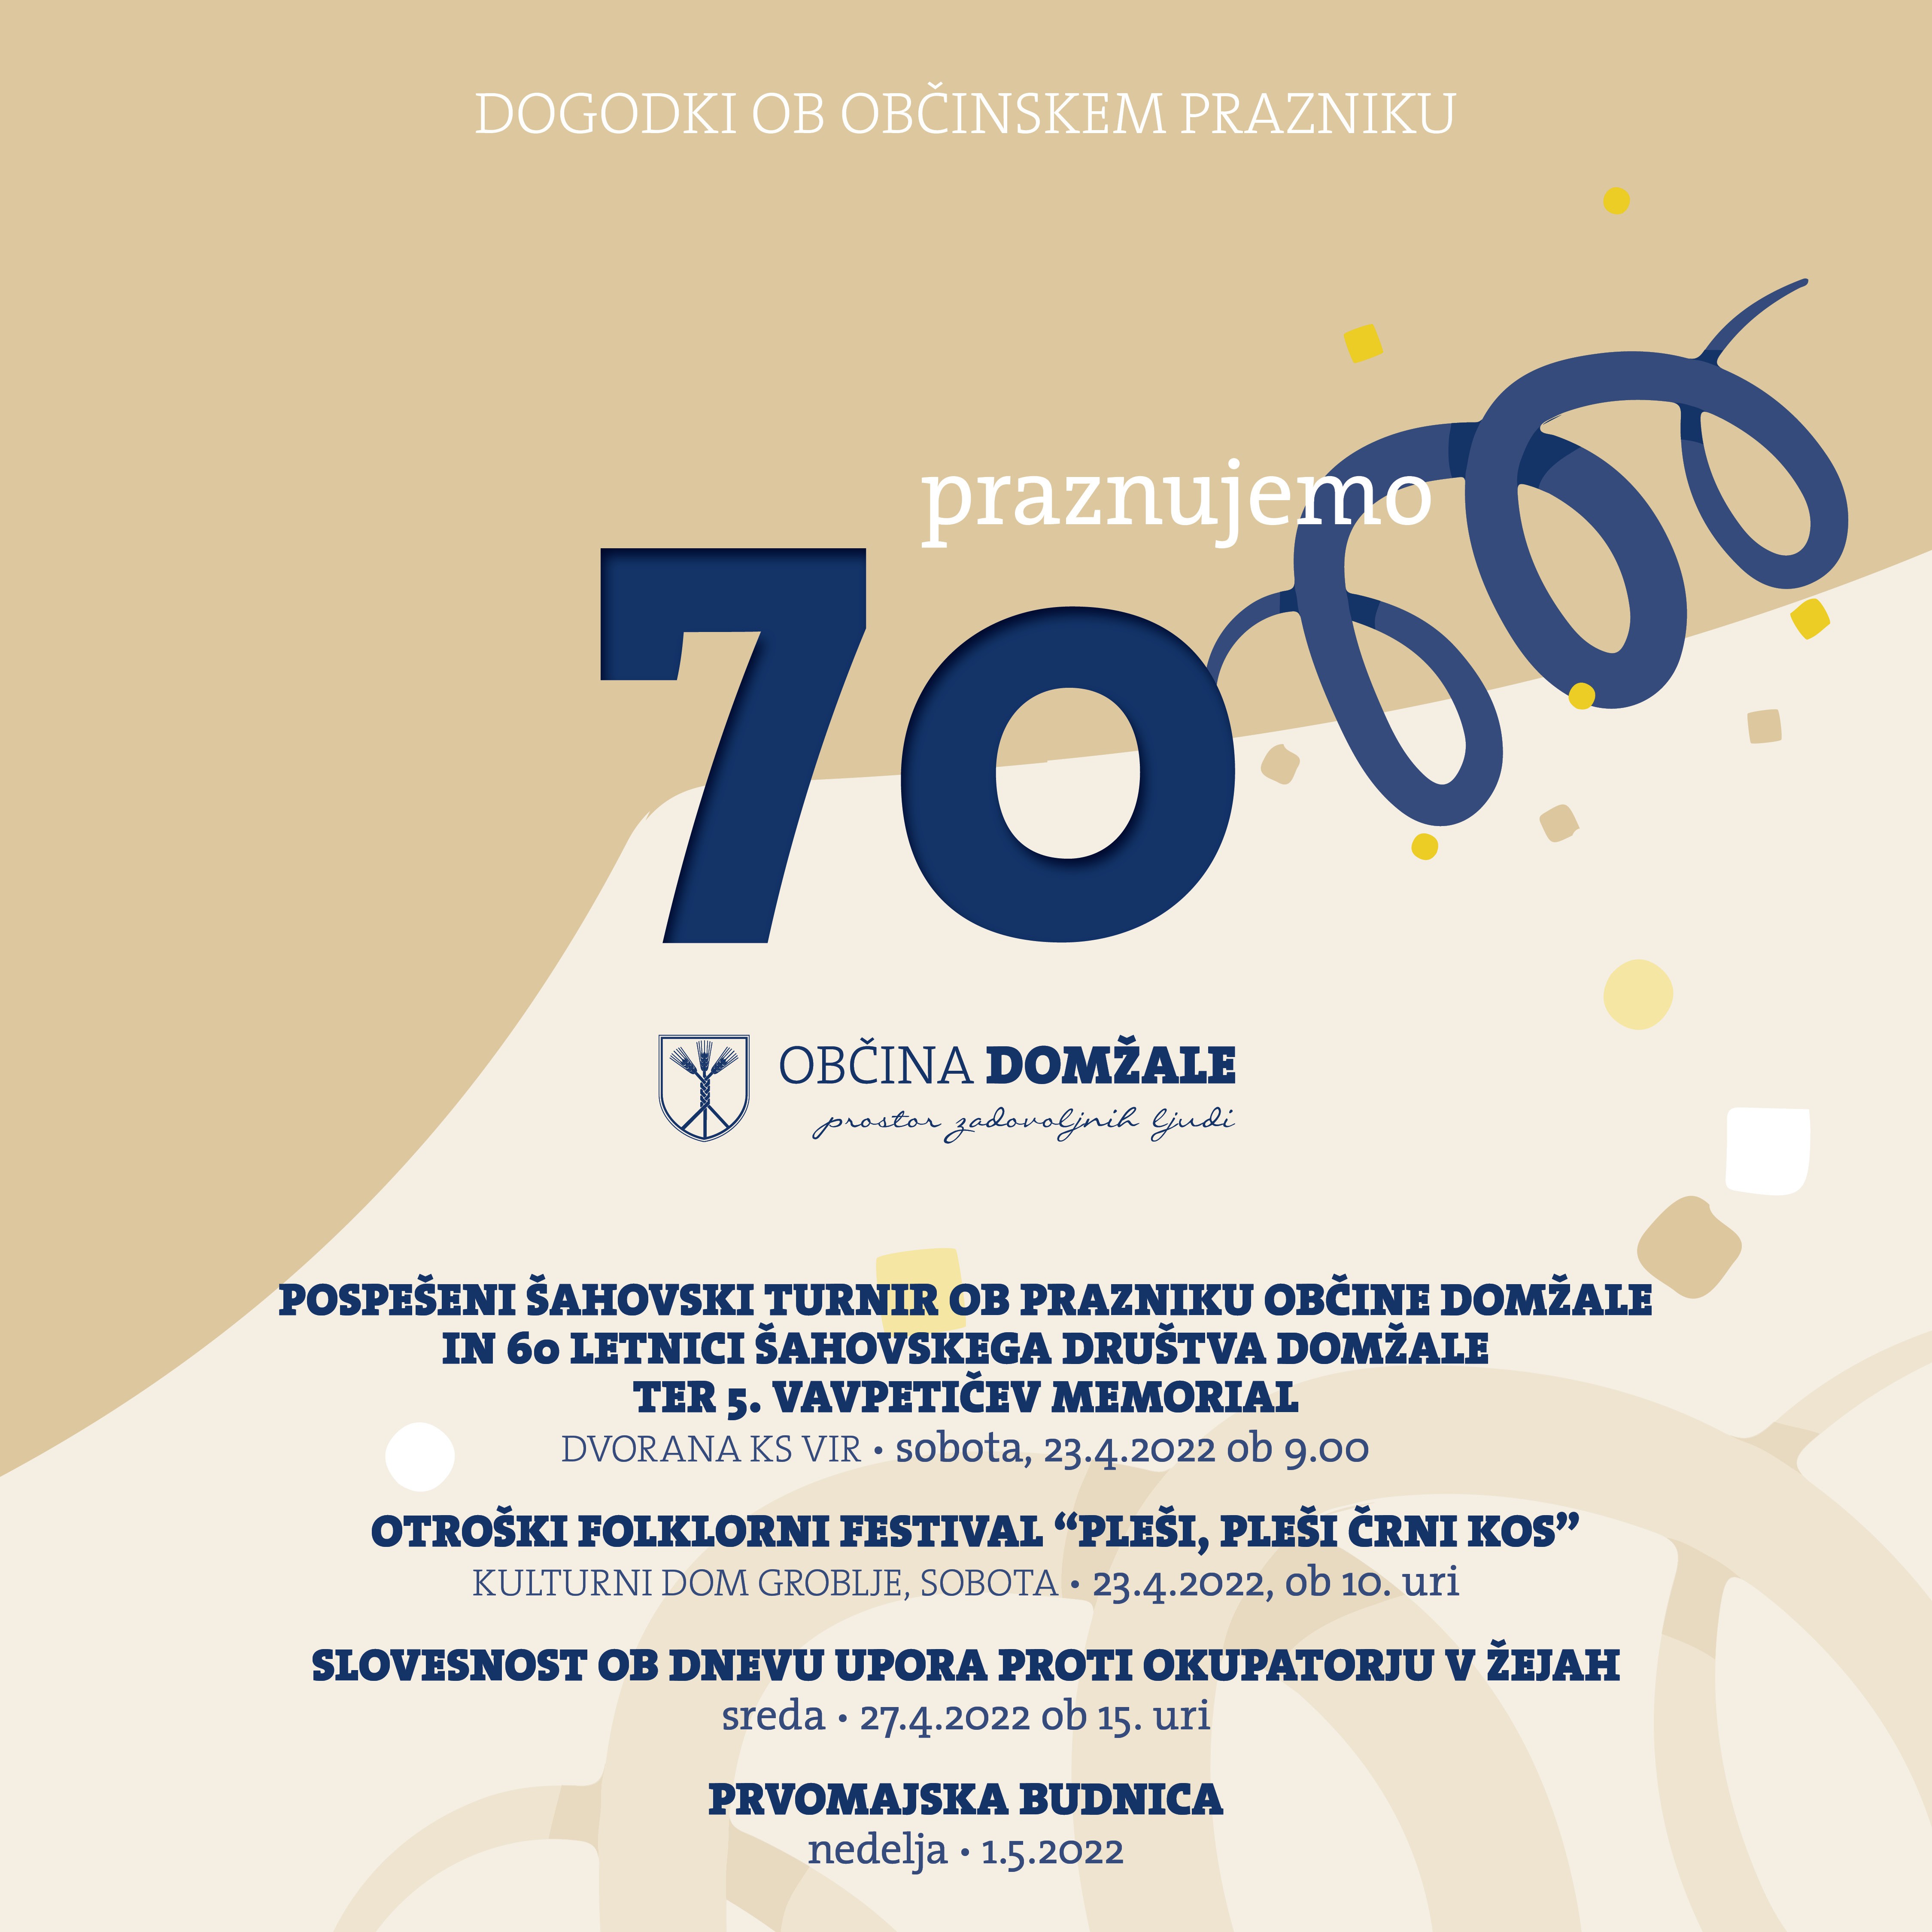 Program dogodkov in prireditev ob občinskem prazniku – Občina Domžale obeležuje 70 let 